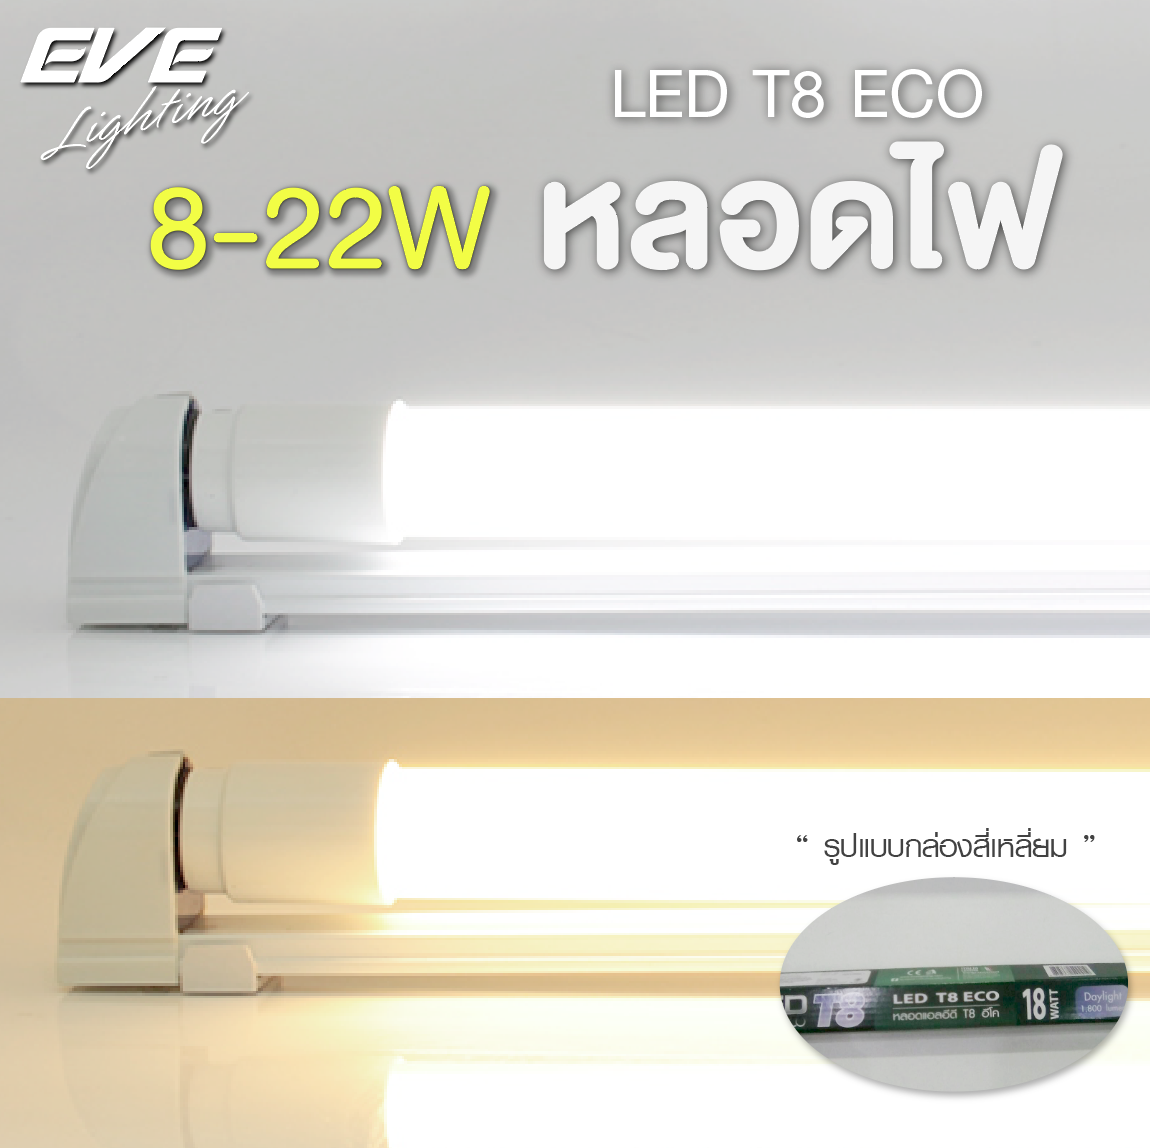 LED T8 ECO หลอดแอลอีดี T8 ชนิดไฟเข้าสองทาง แสงขาวเดย์ไลท์ และแสงเหลืองวอร์มไวท์ รับประกัน 2 ปี